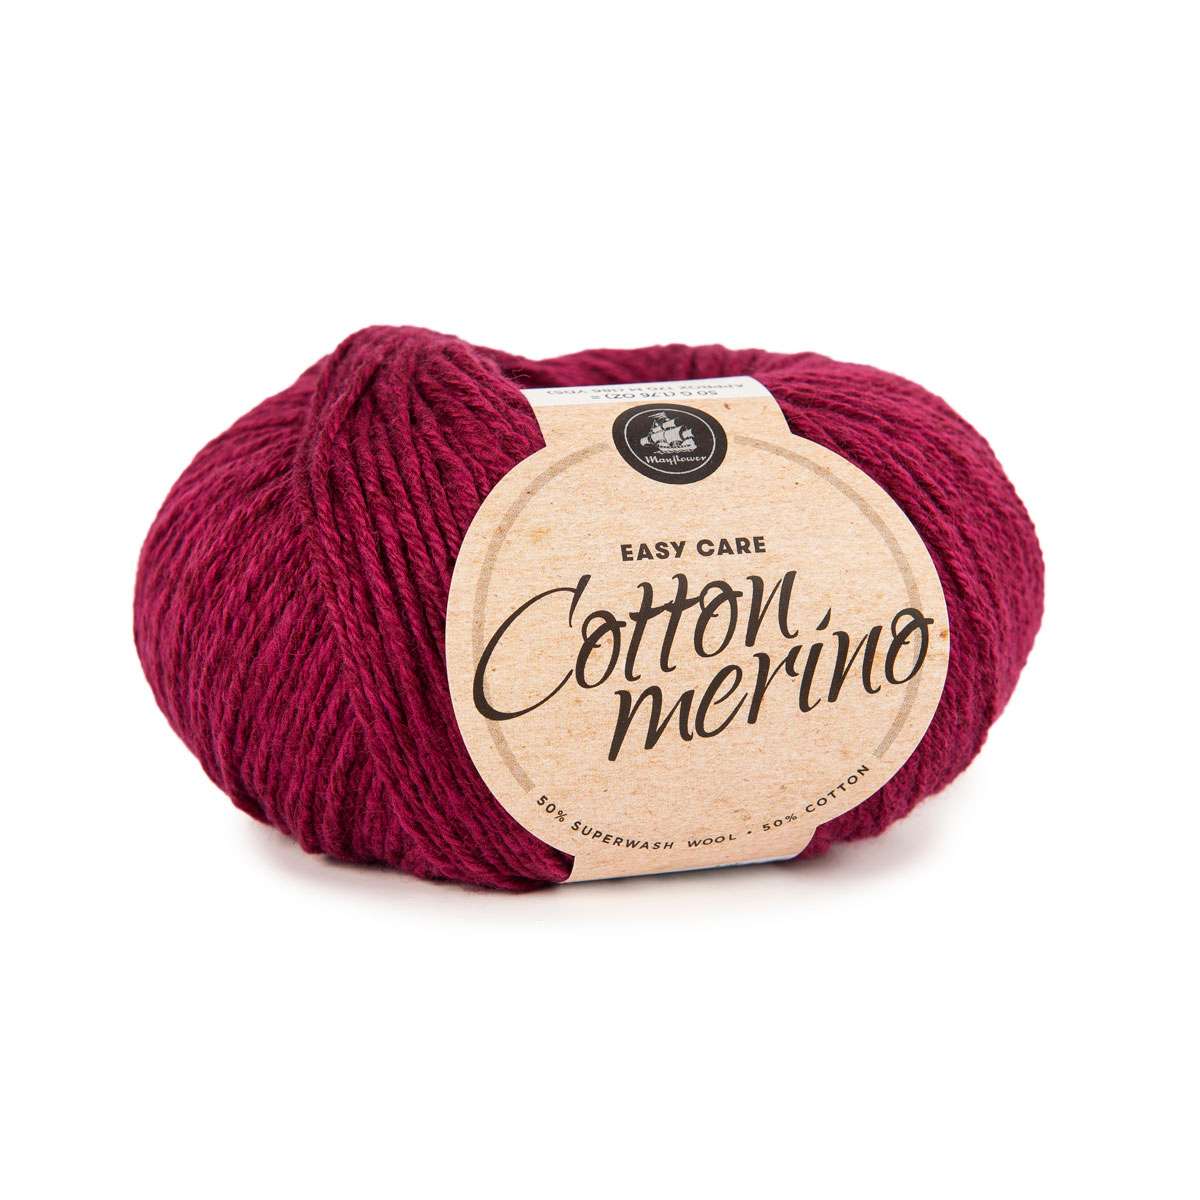 Cotton Merino - 40% så længe lager haves